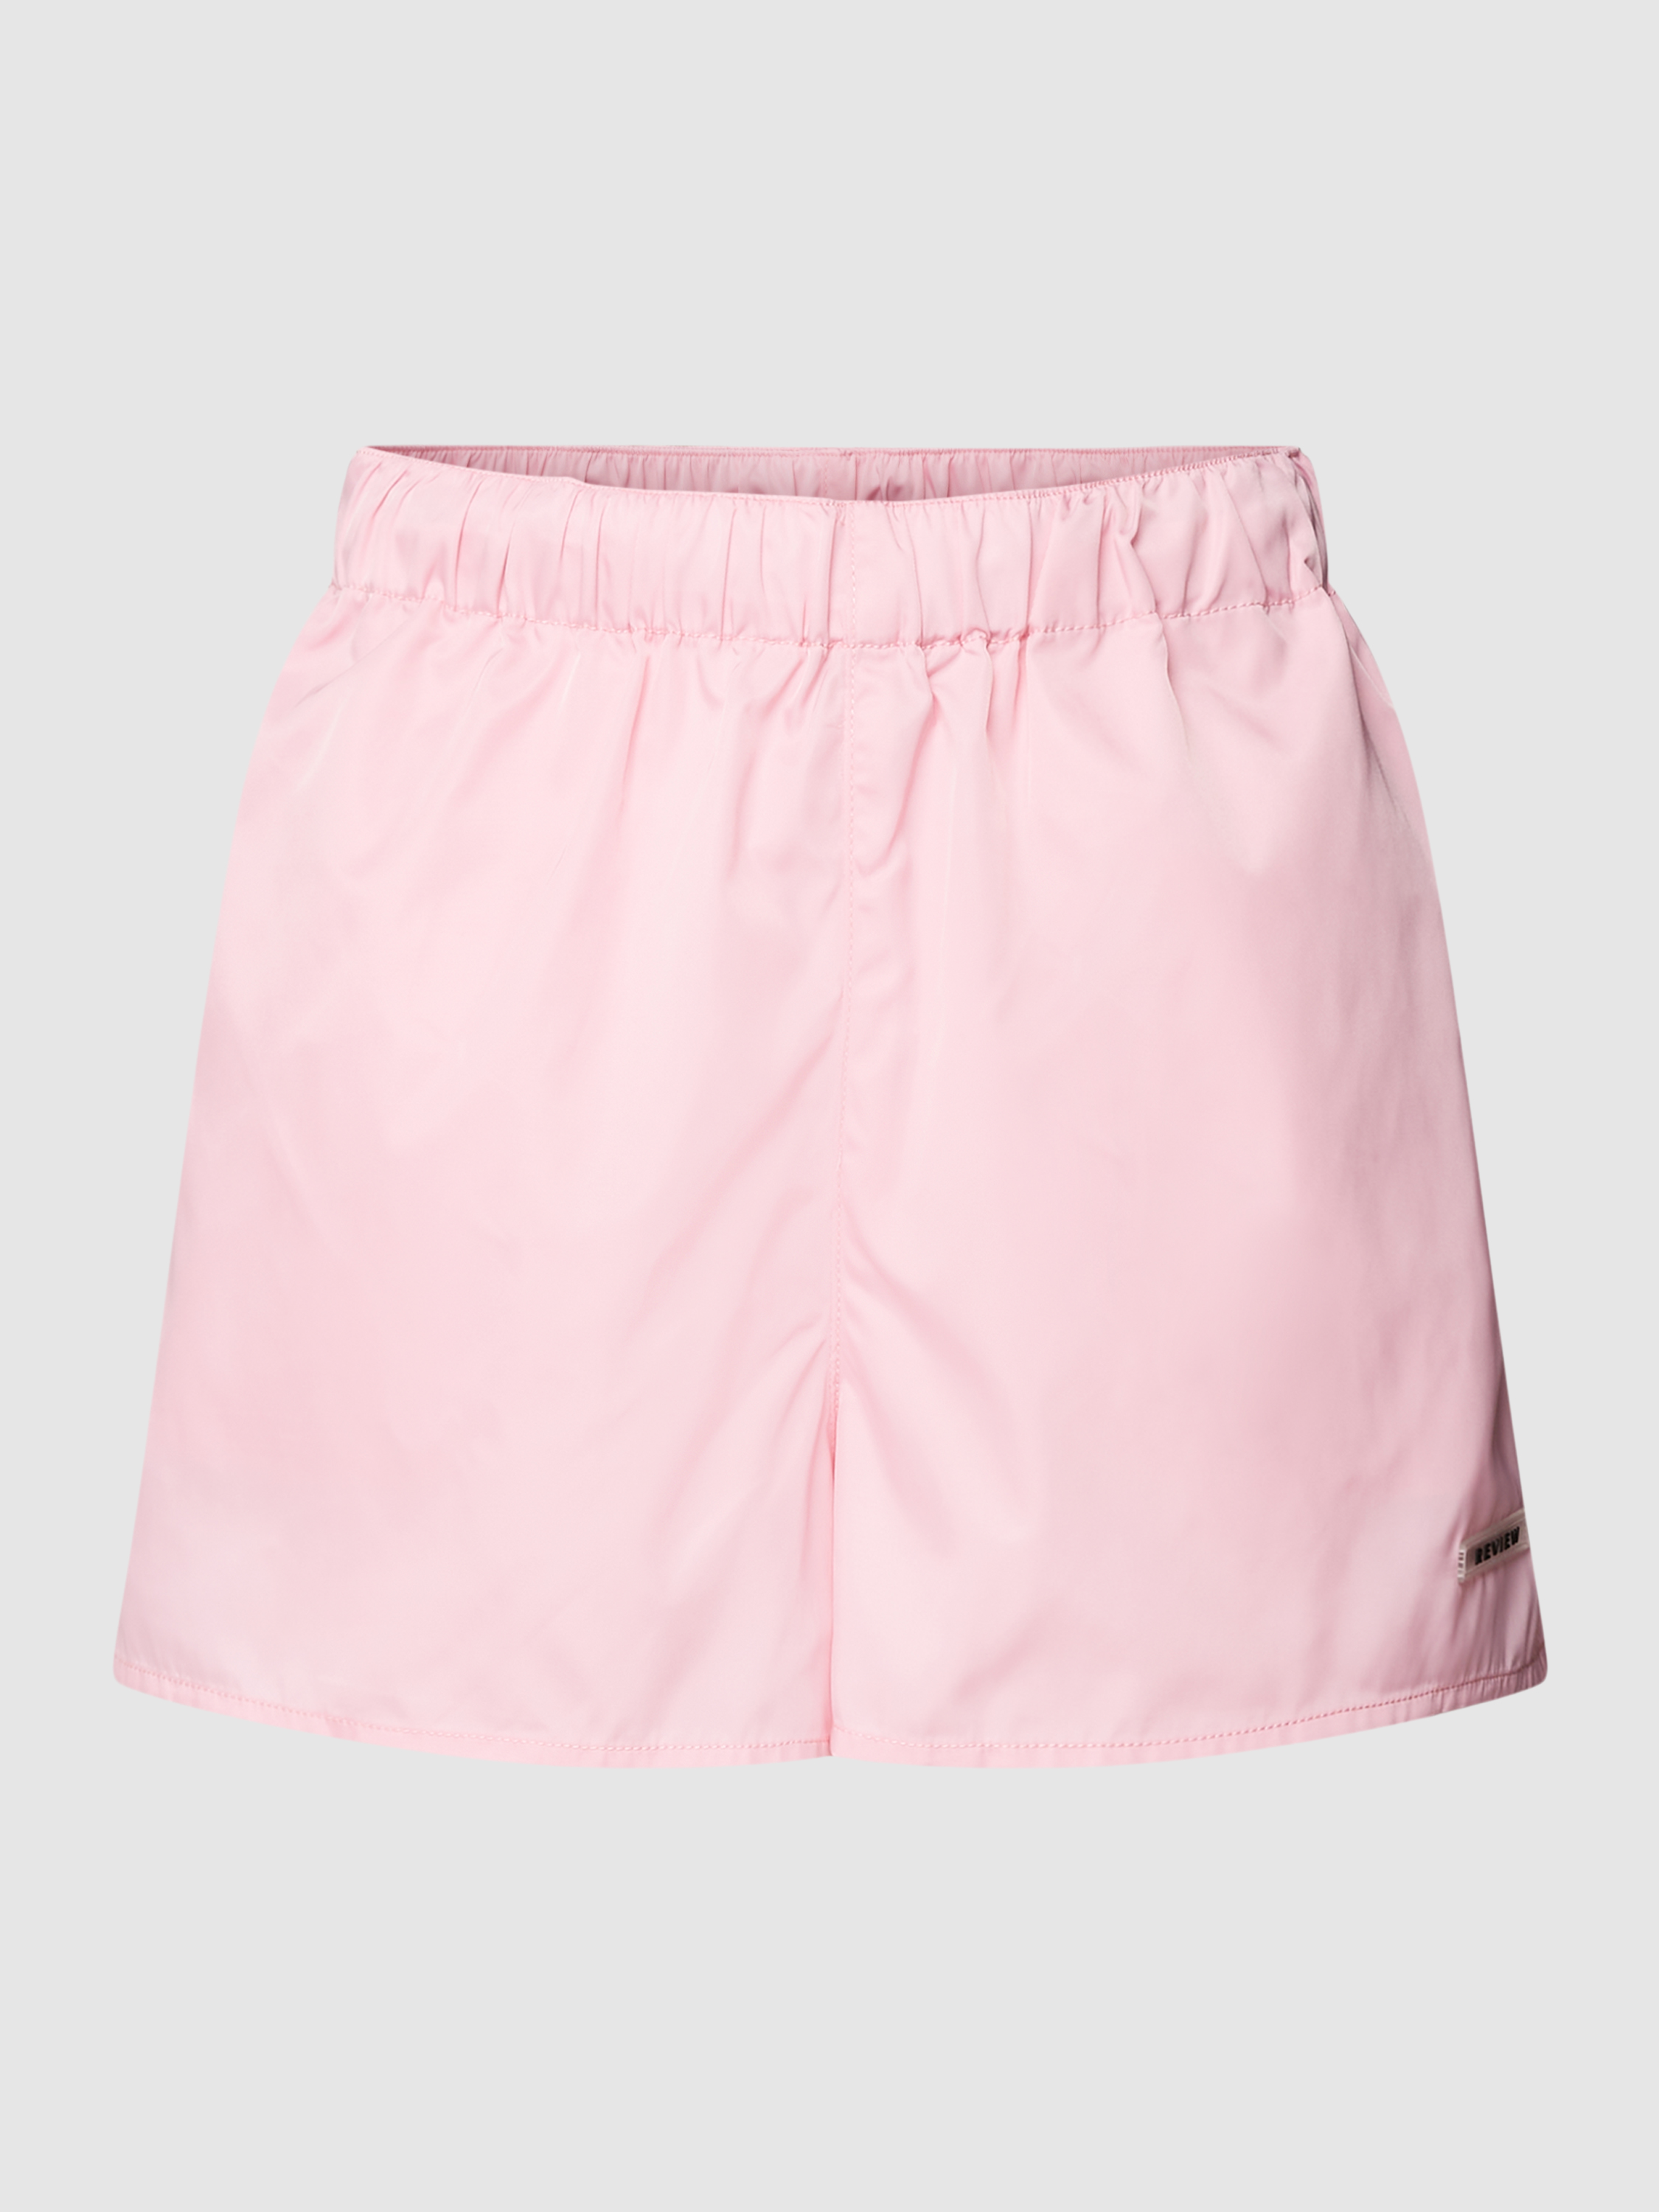 Повседневные шорты женские Review 1787714 розовые S (доставка из-за рубежа)